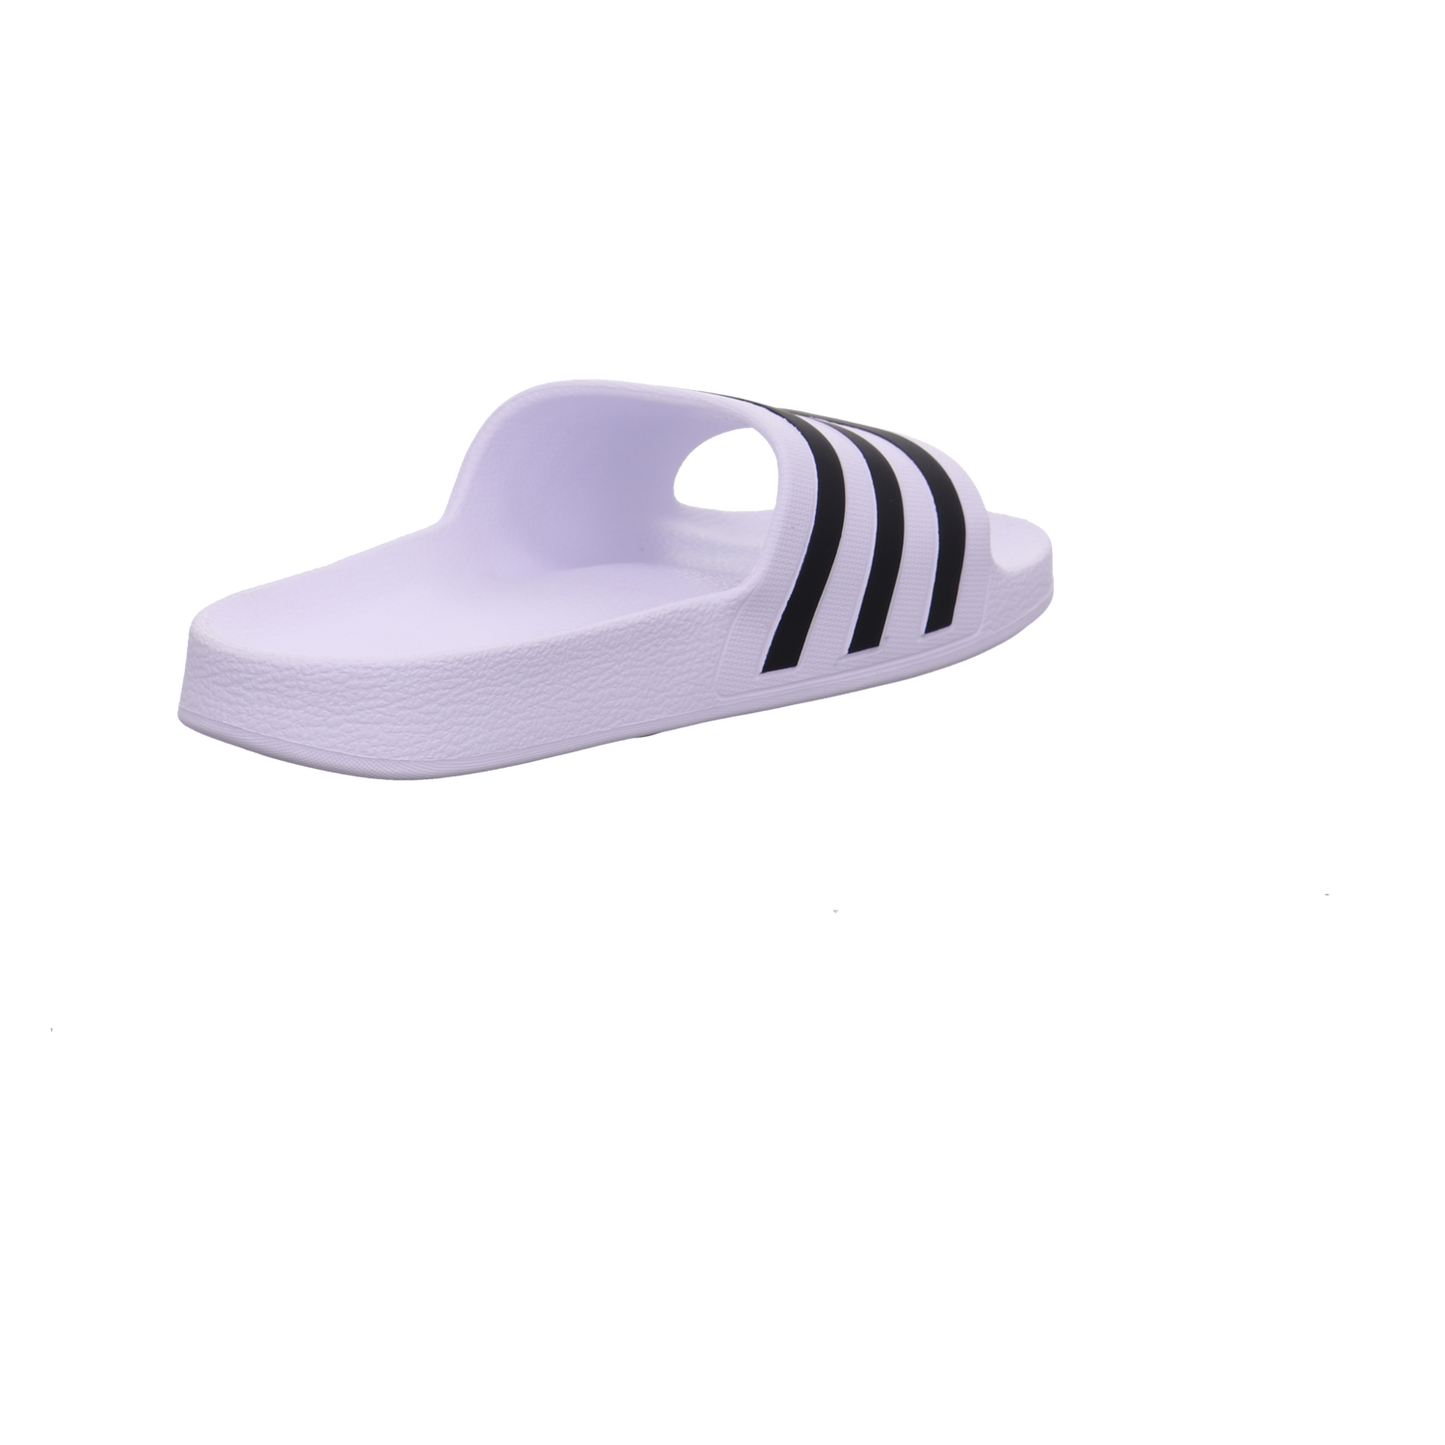 Adidas Schuhe  weiß-schwarz Bild5